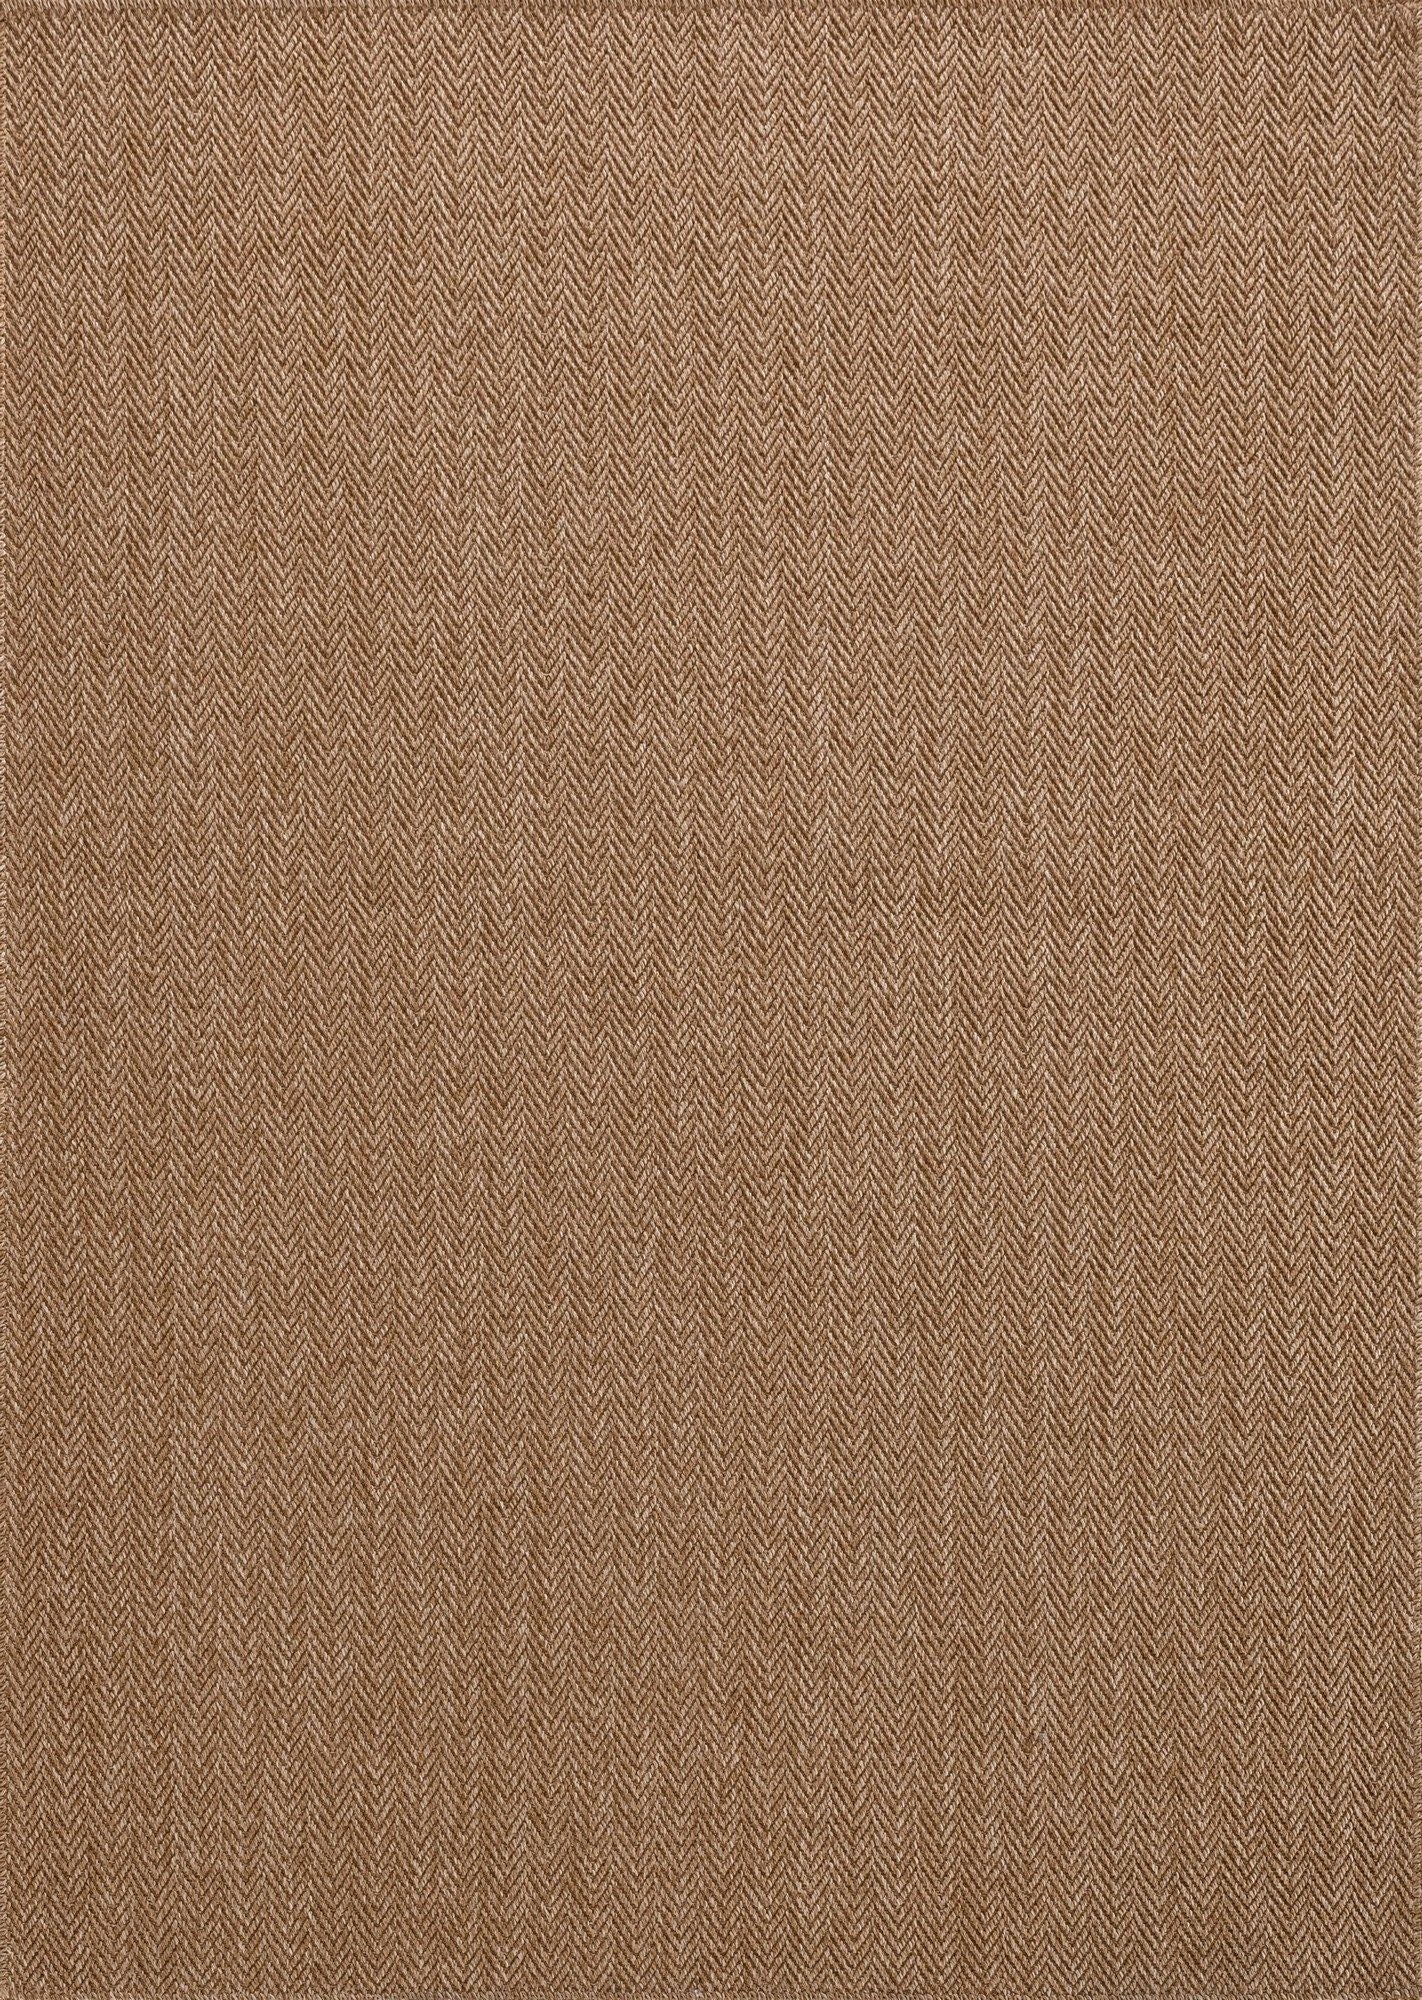 0503 Jut - Brown - Carpet (80 x 150)